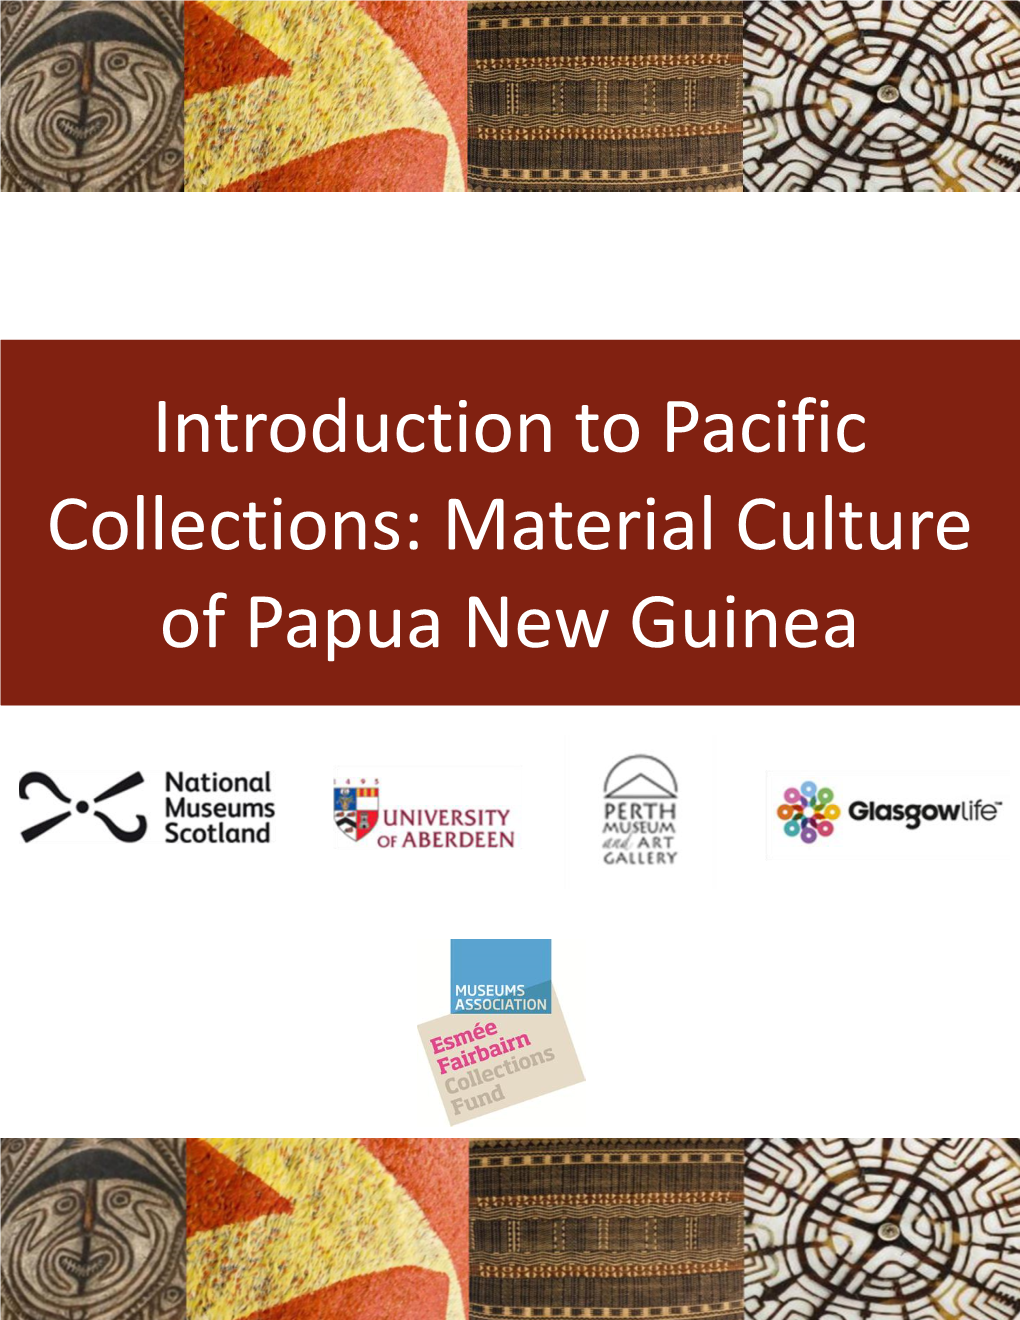 Material Culture of Papua New Guinea